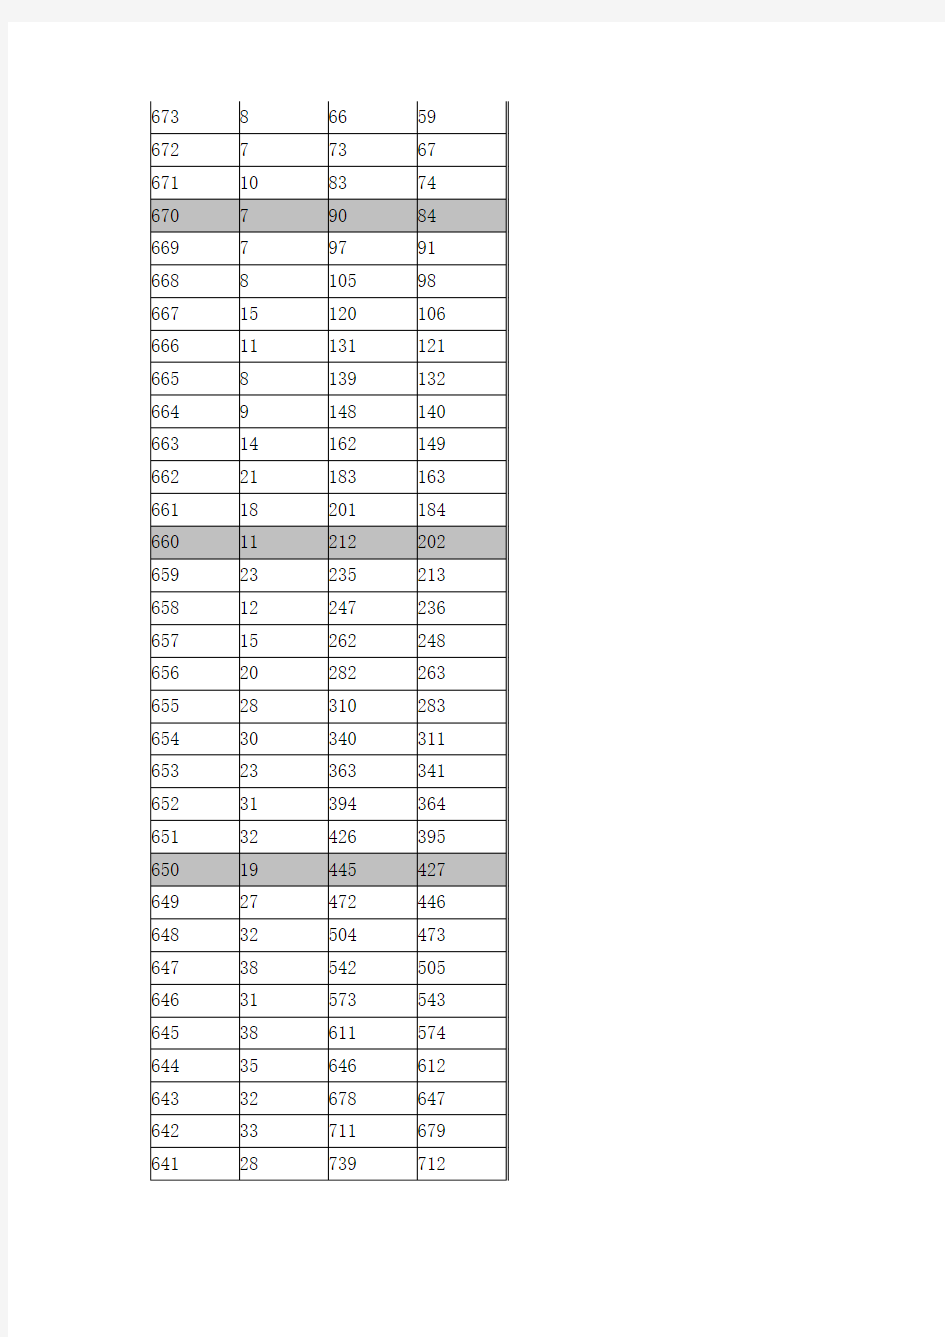 2016年广西高考成绩一分一档表